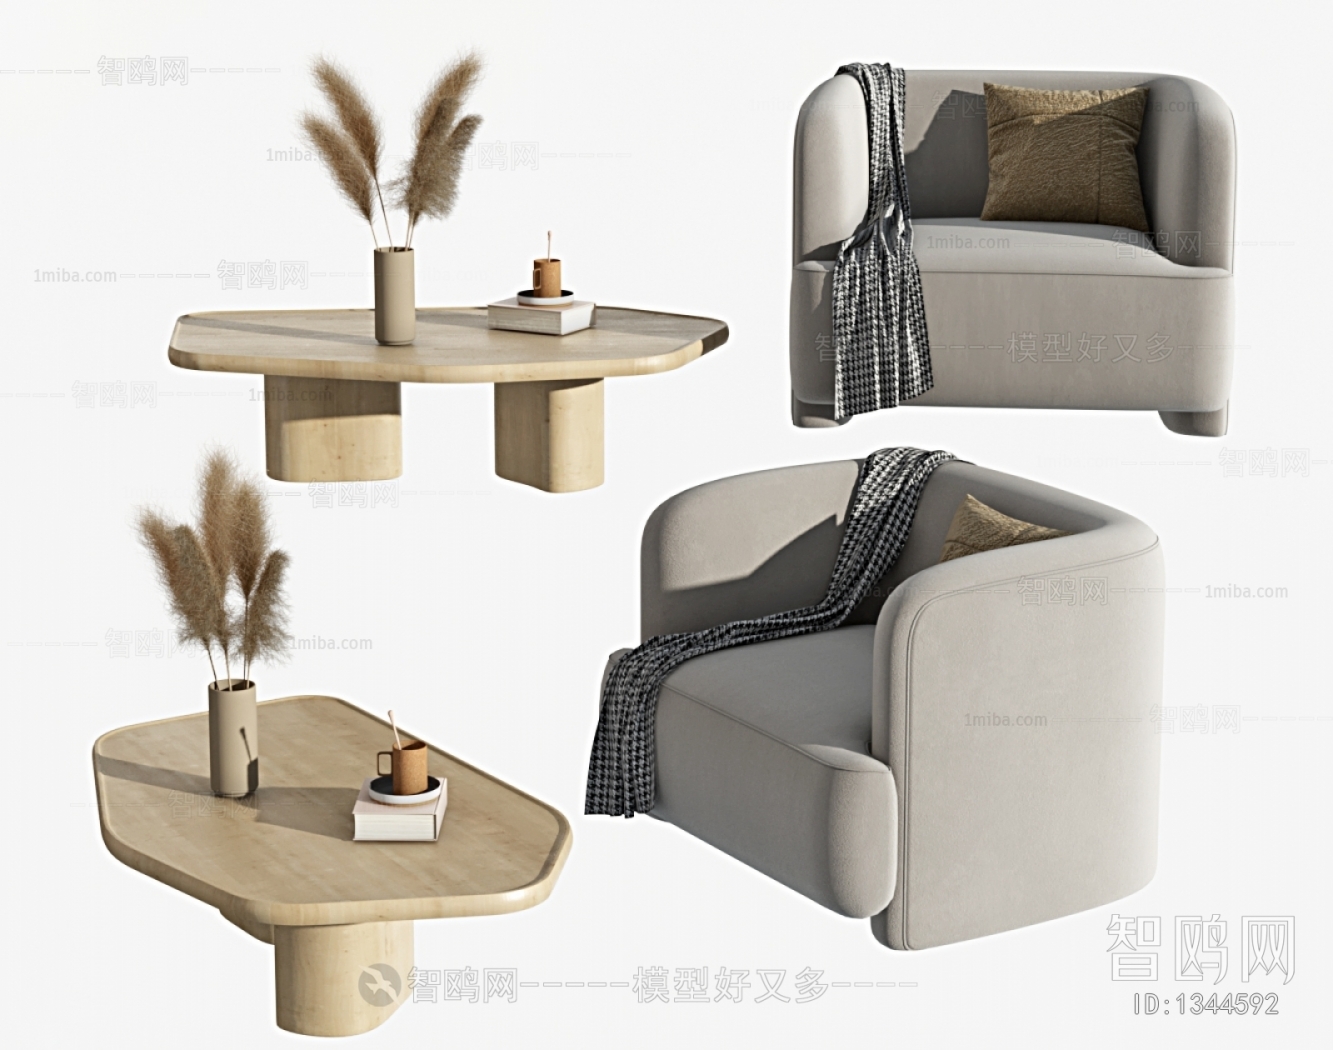 Japanese Style Single Sofa